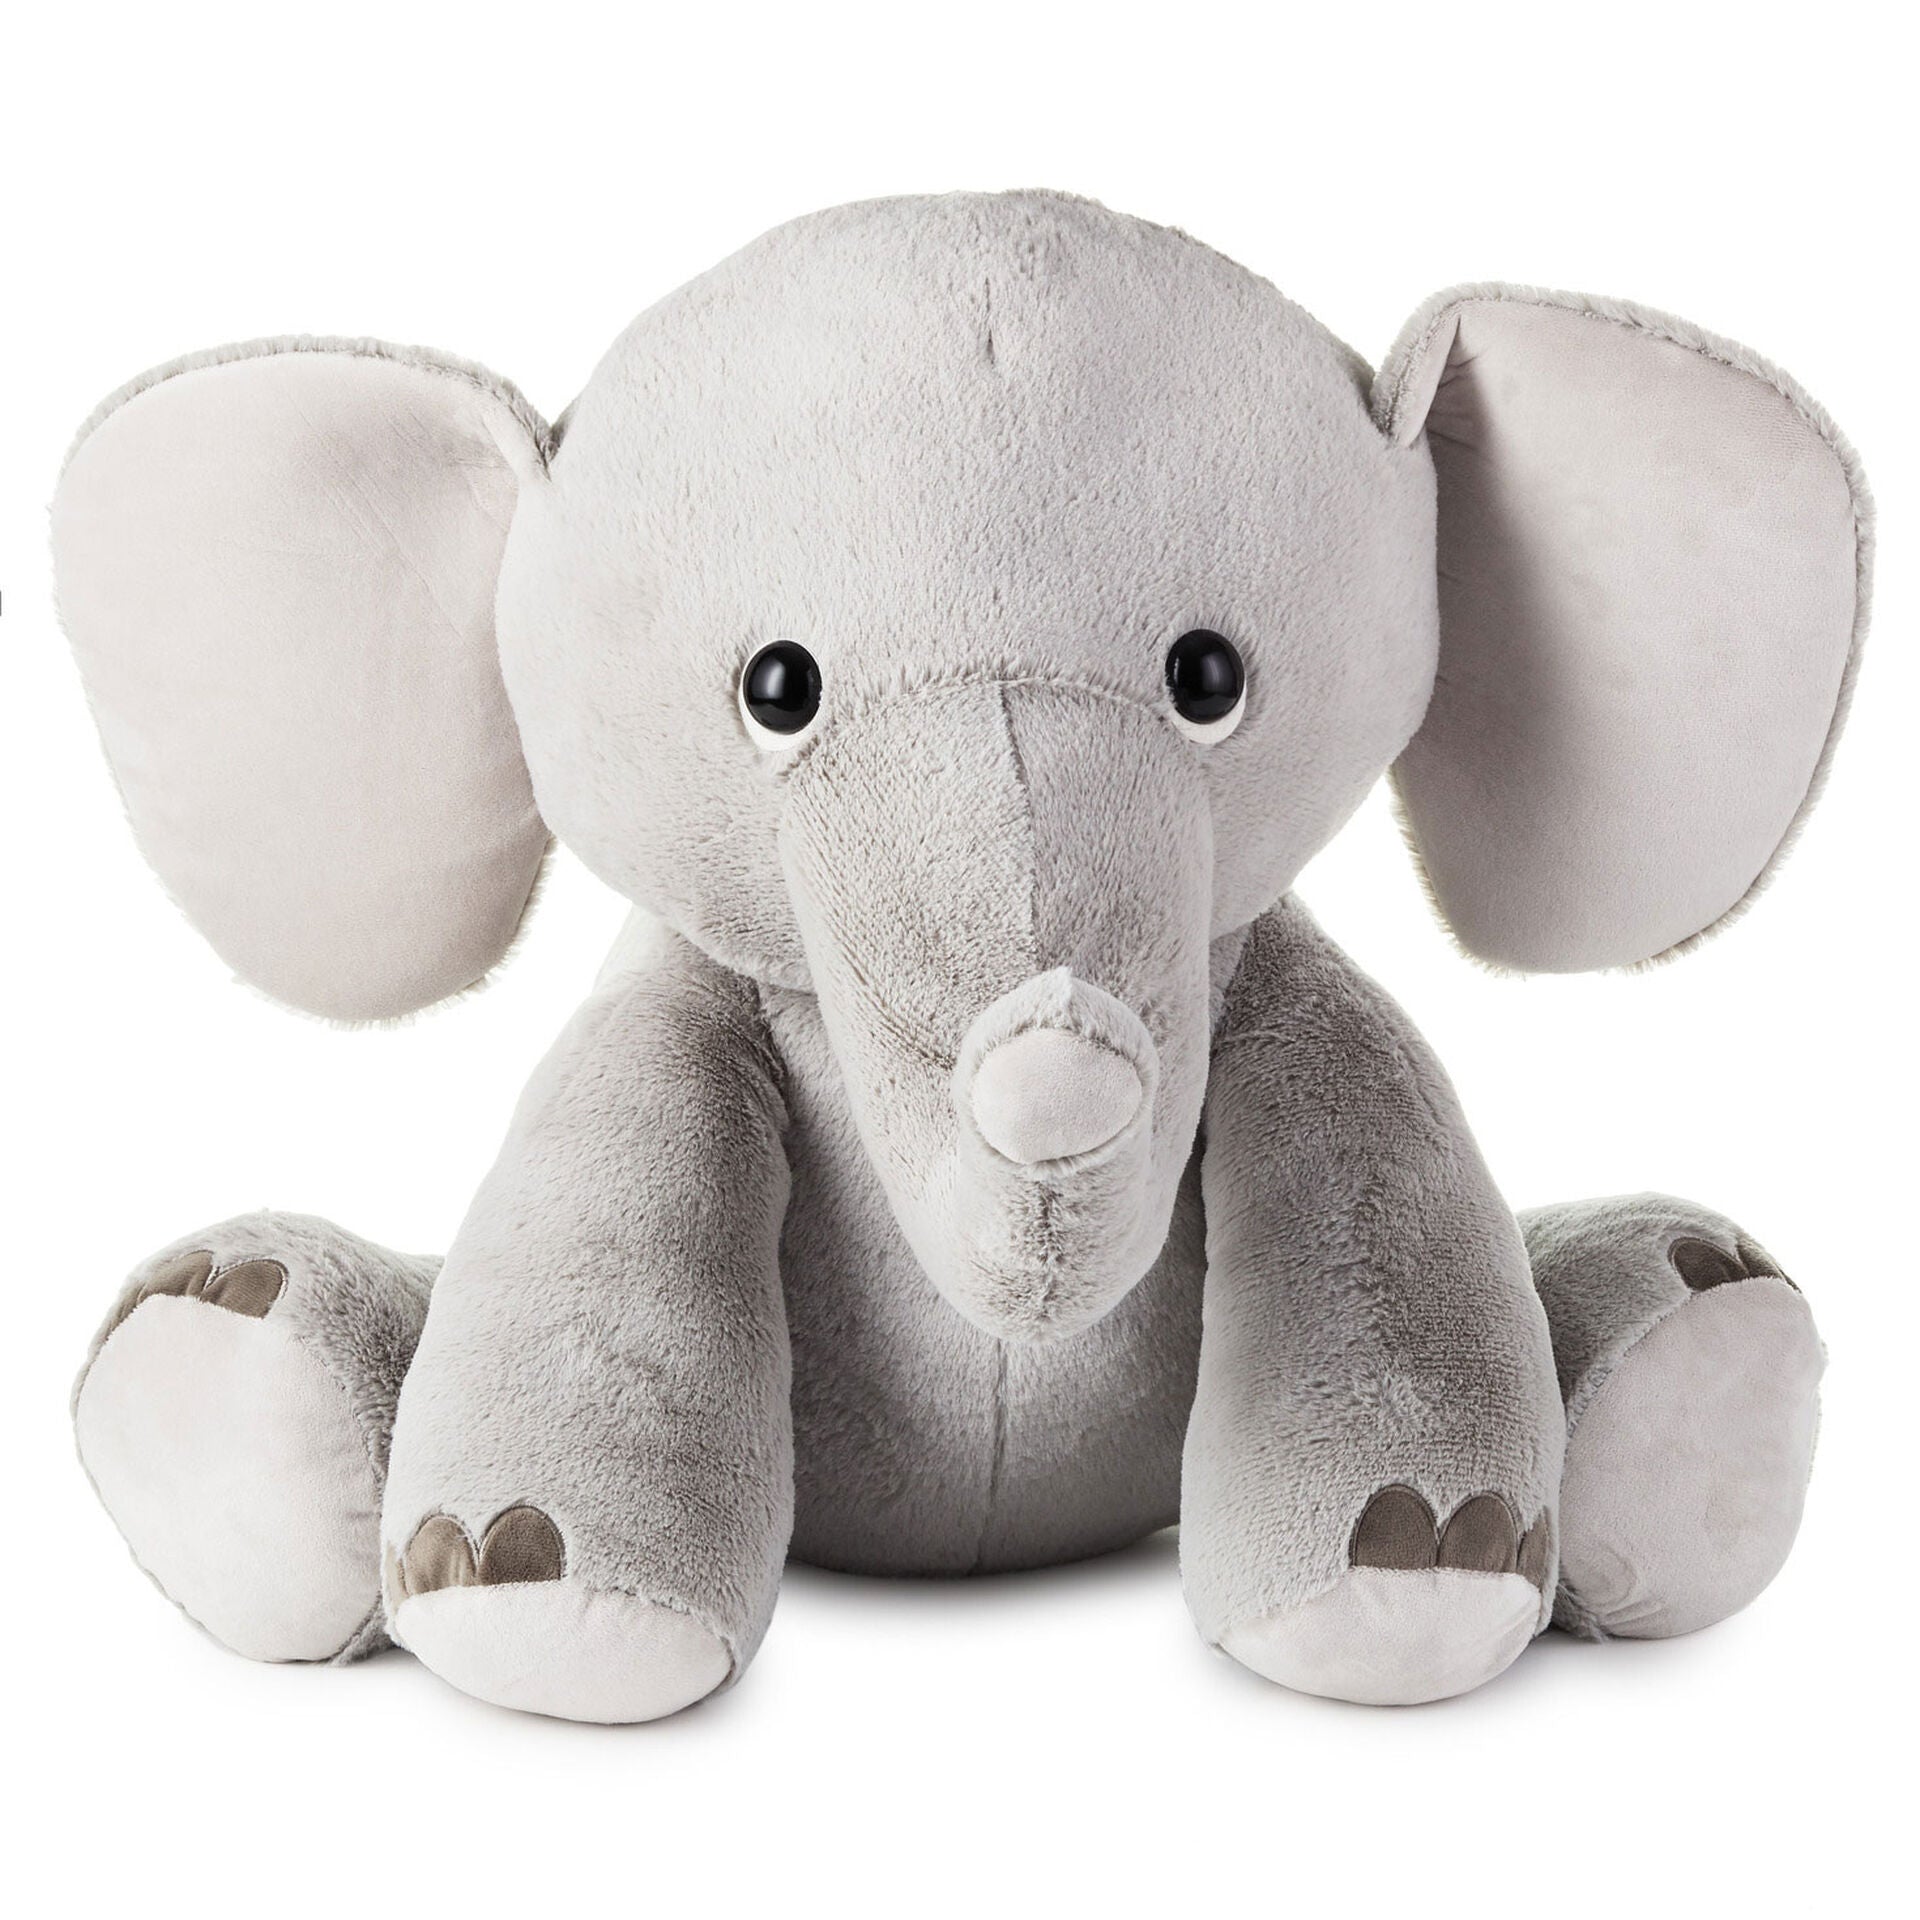 Baby Elephant Stuffed Animal, 20"